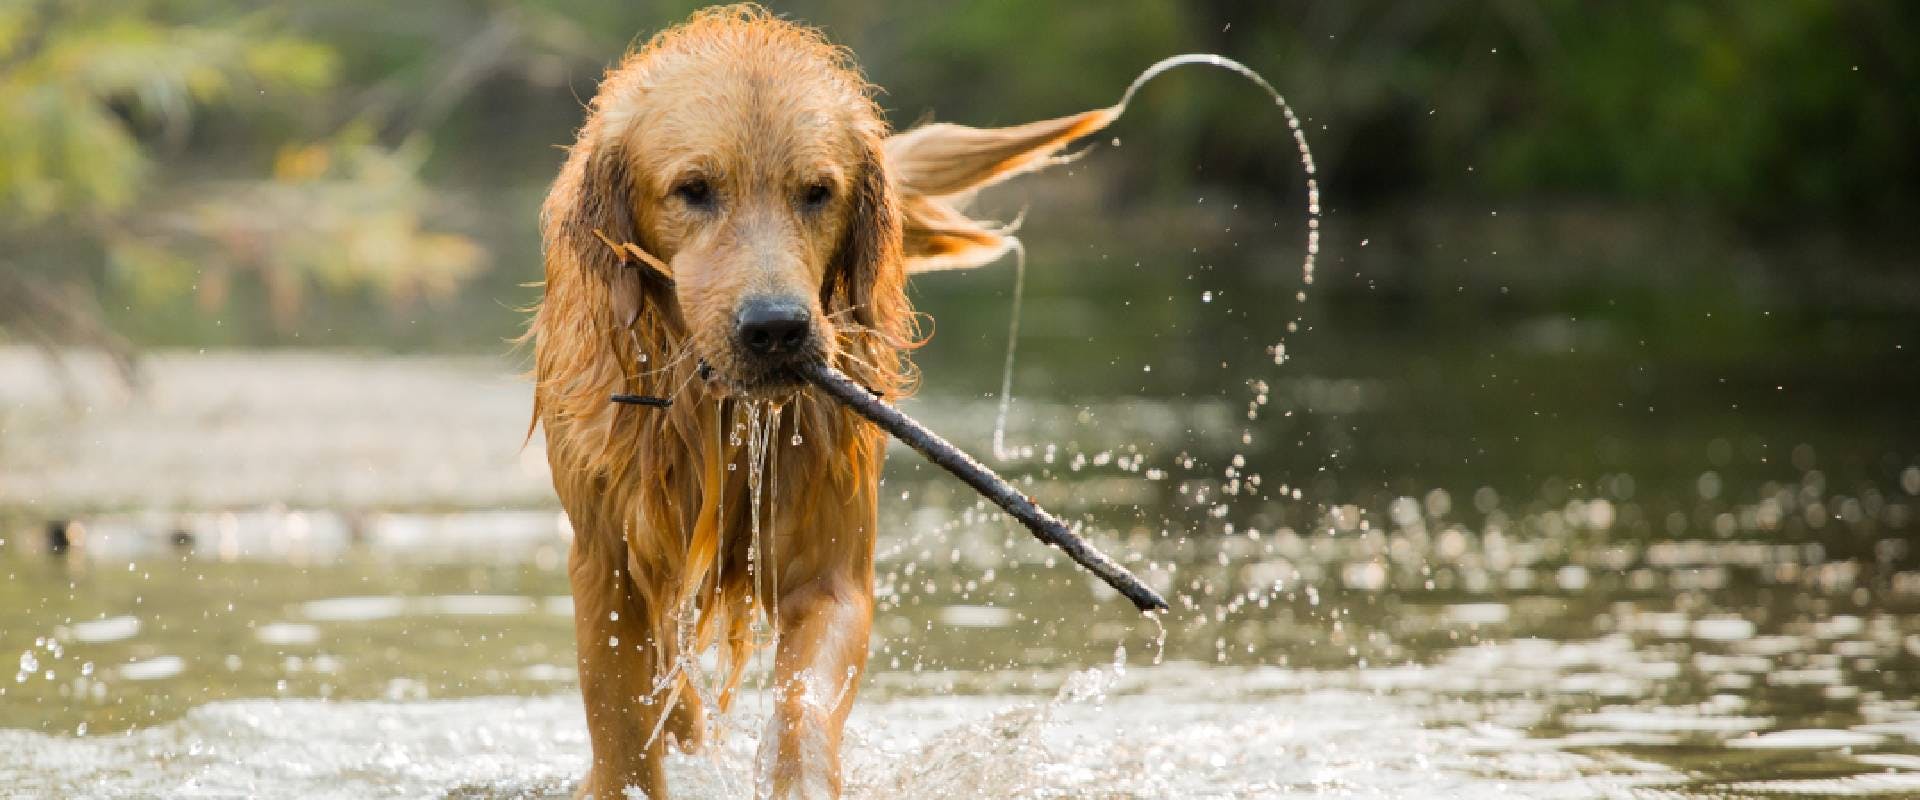 Golden Retriever dog in a river